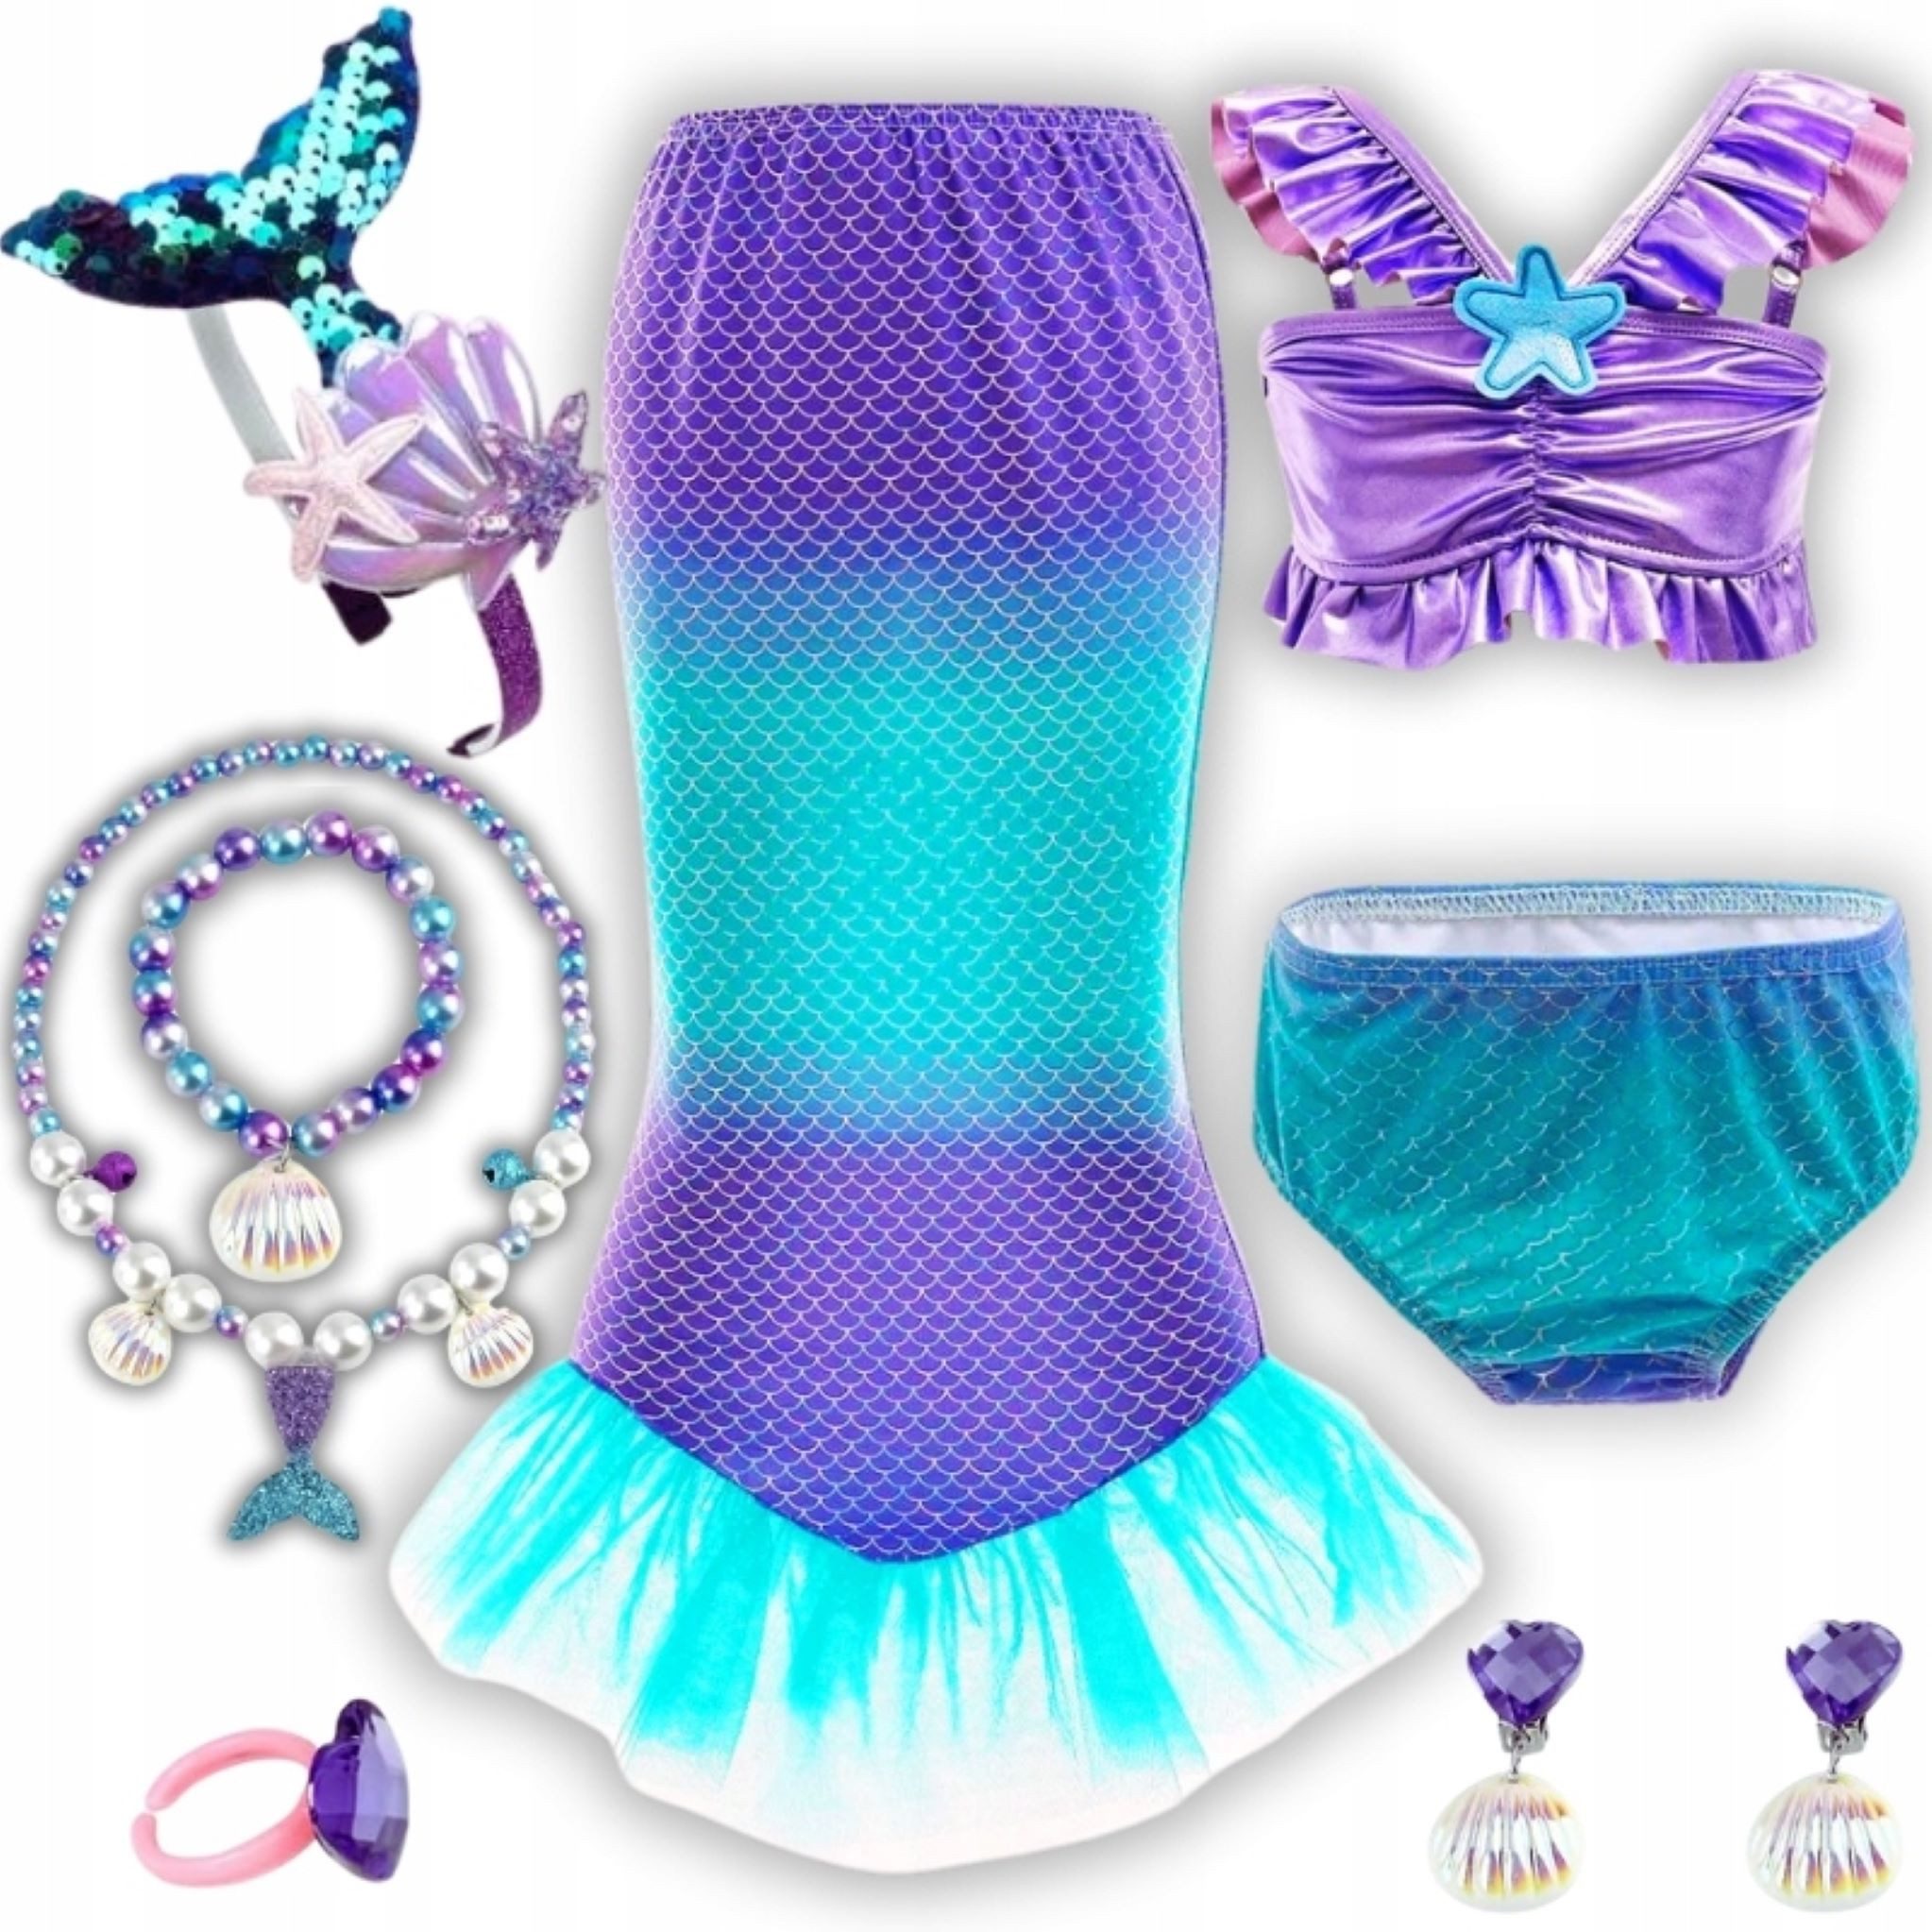 Festivalartikel Badeanzug Kostüm Meerjungfrau Arielka 8in1 für Mädchen